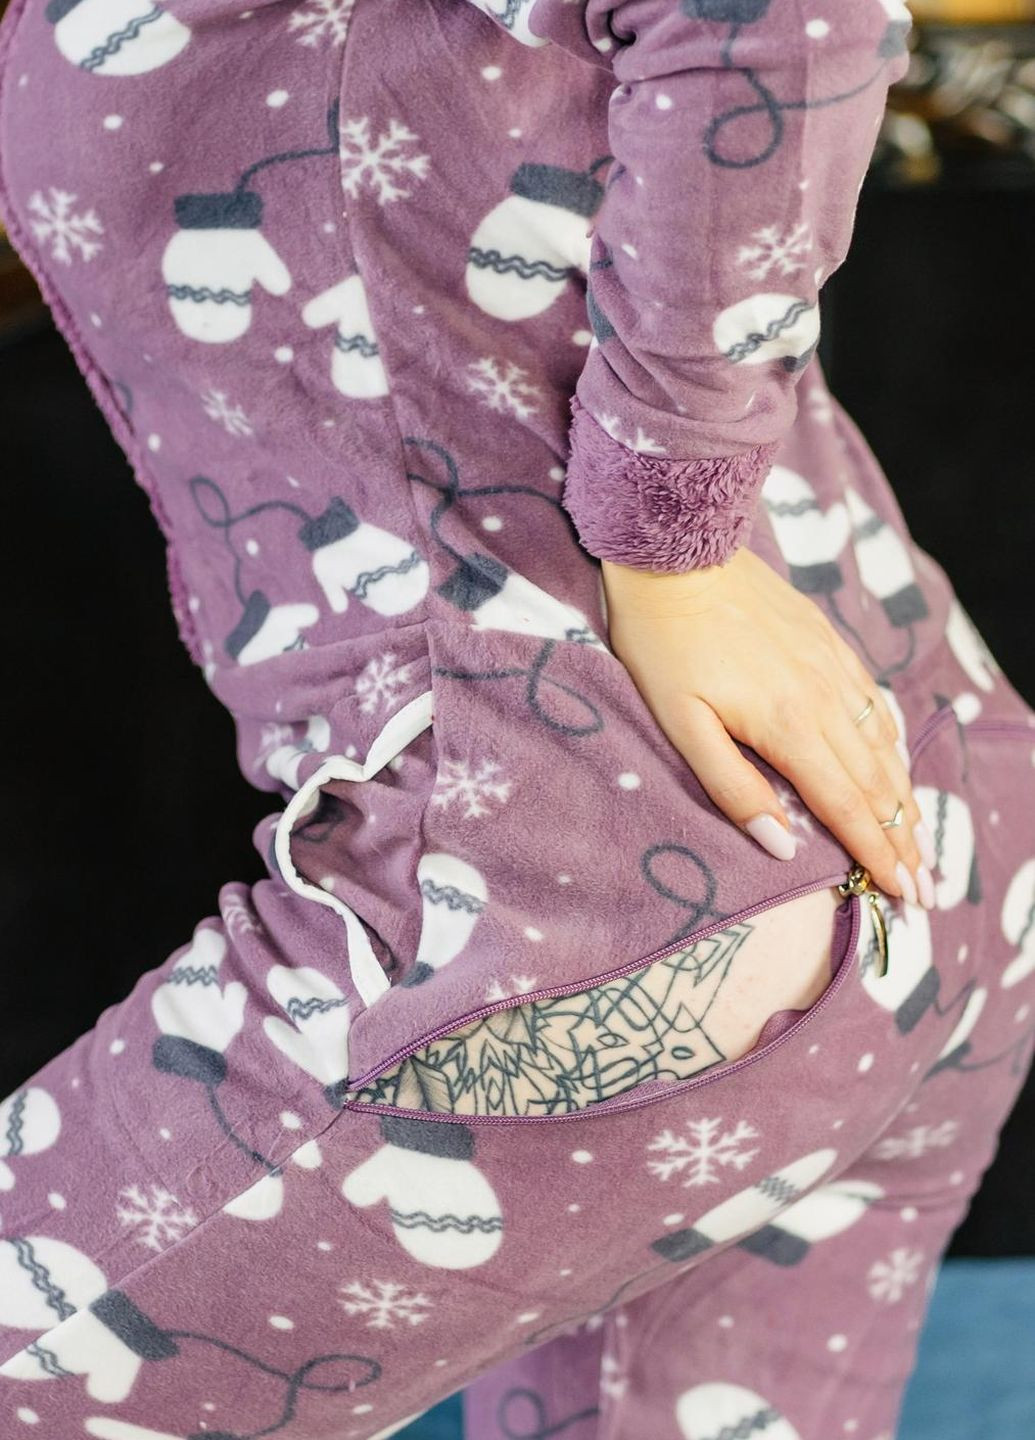 Светло-фиолетовая зимняя пижама комбинезон Pijamoni Попожама рукавичка (комбінезон з карманом на попі, піджамоні) - кигурумі